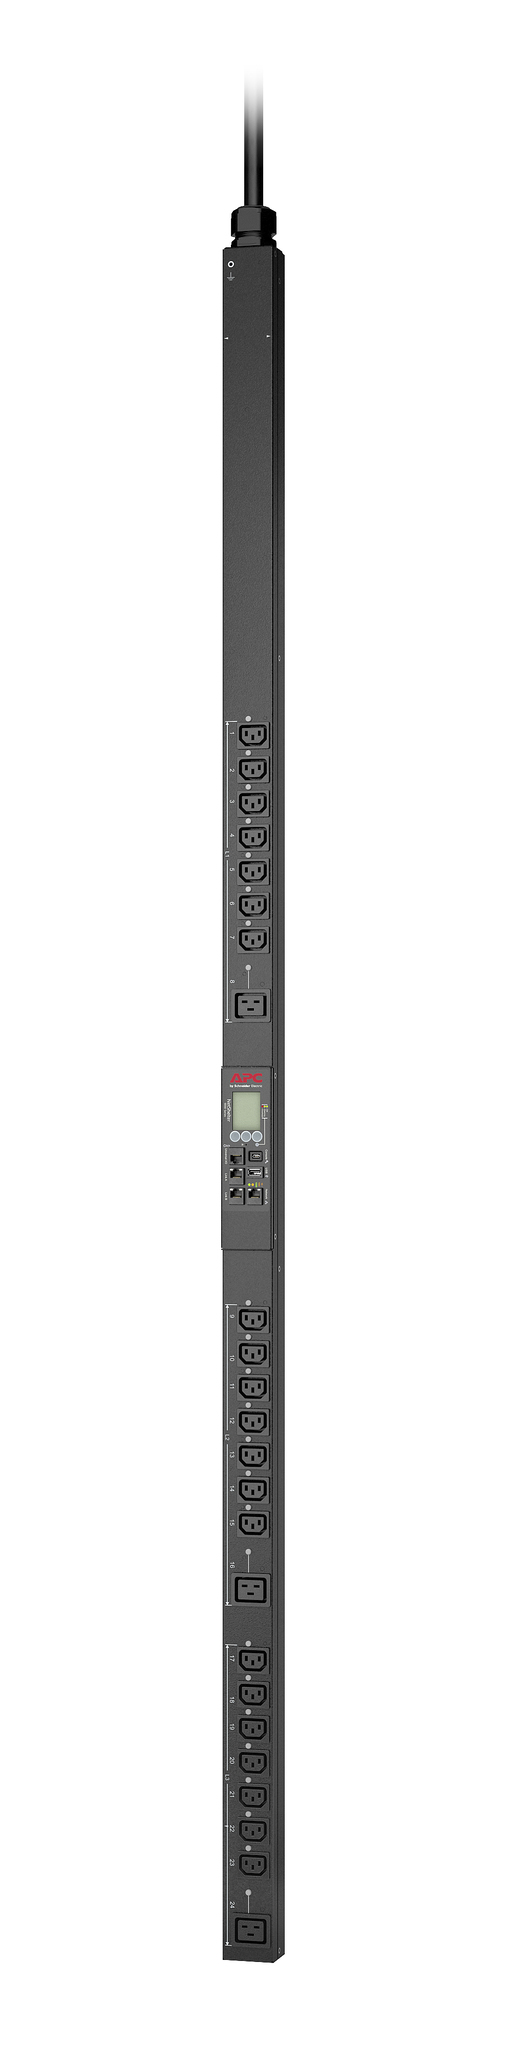 APC Rack PDU 9000 Switched APDU9981EU3 - Stromverteilungseinheit (Rack - einbaufähig)